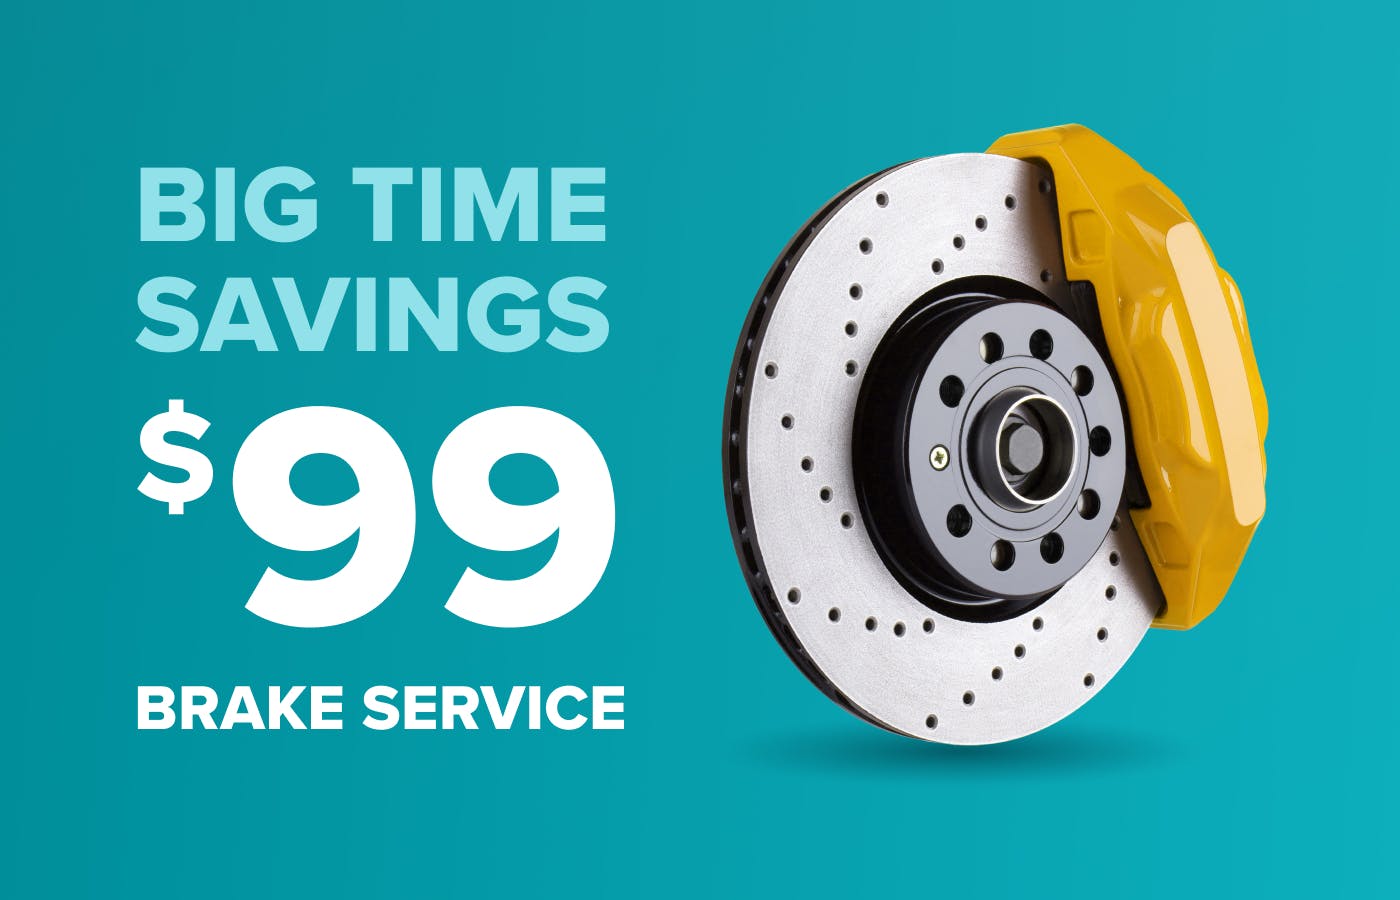 Big Time Savings - $99 Brake Service